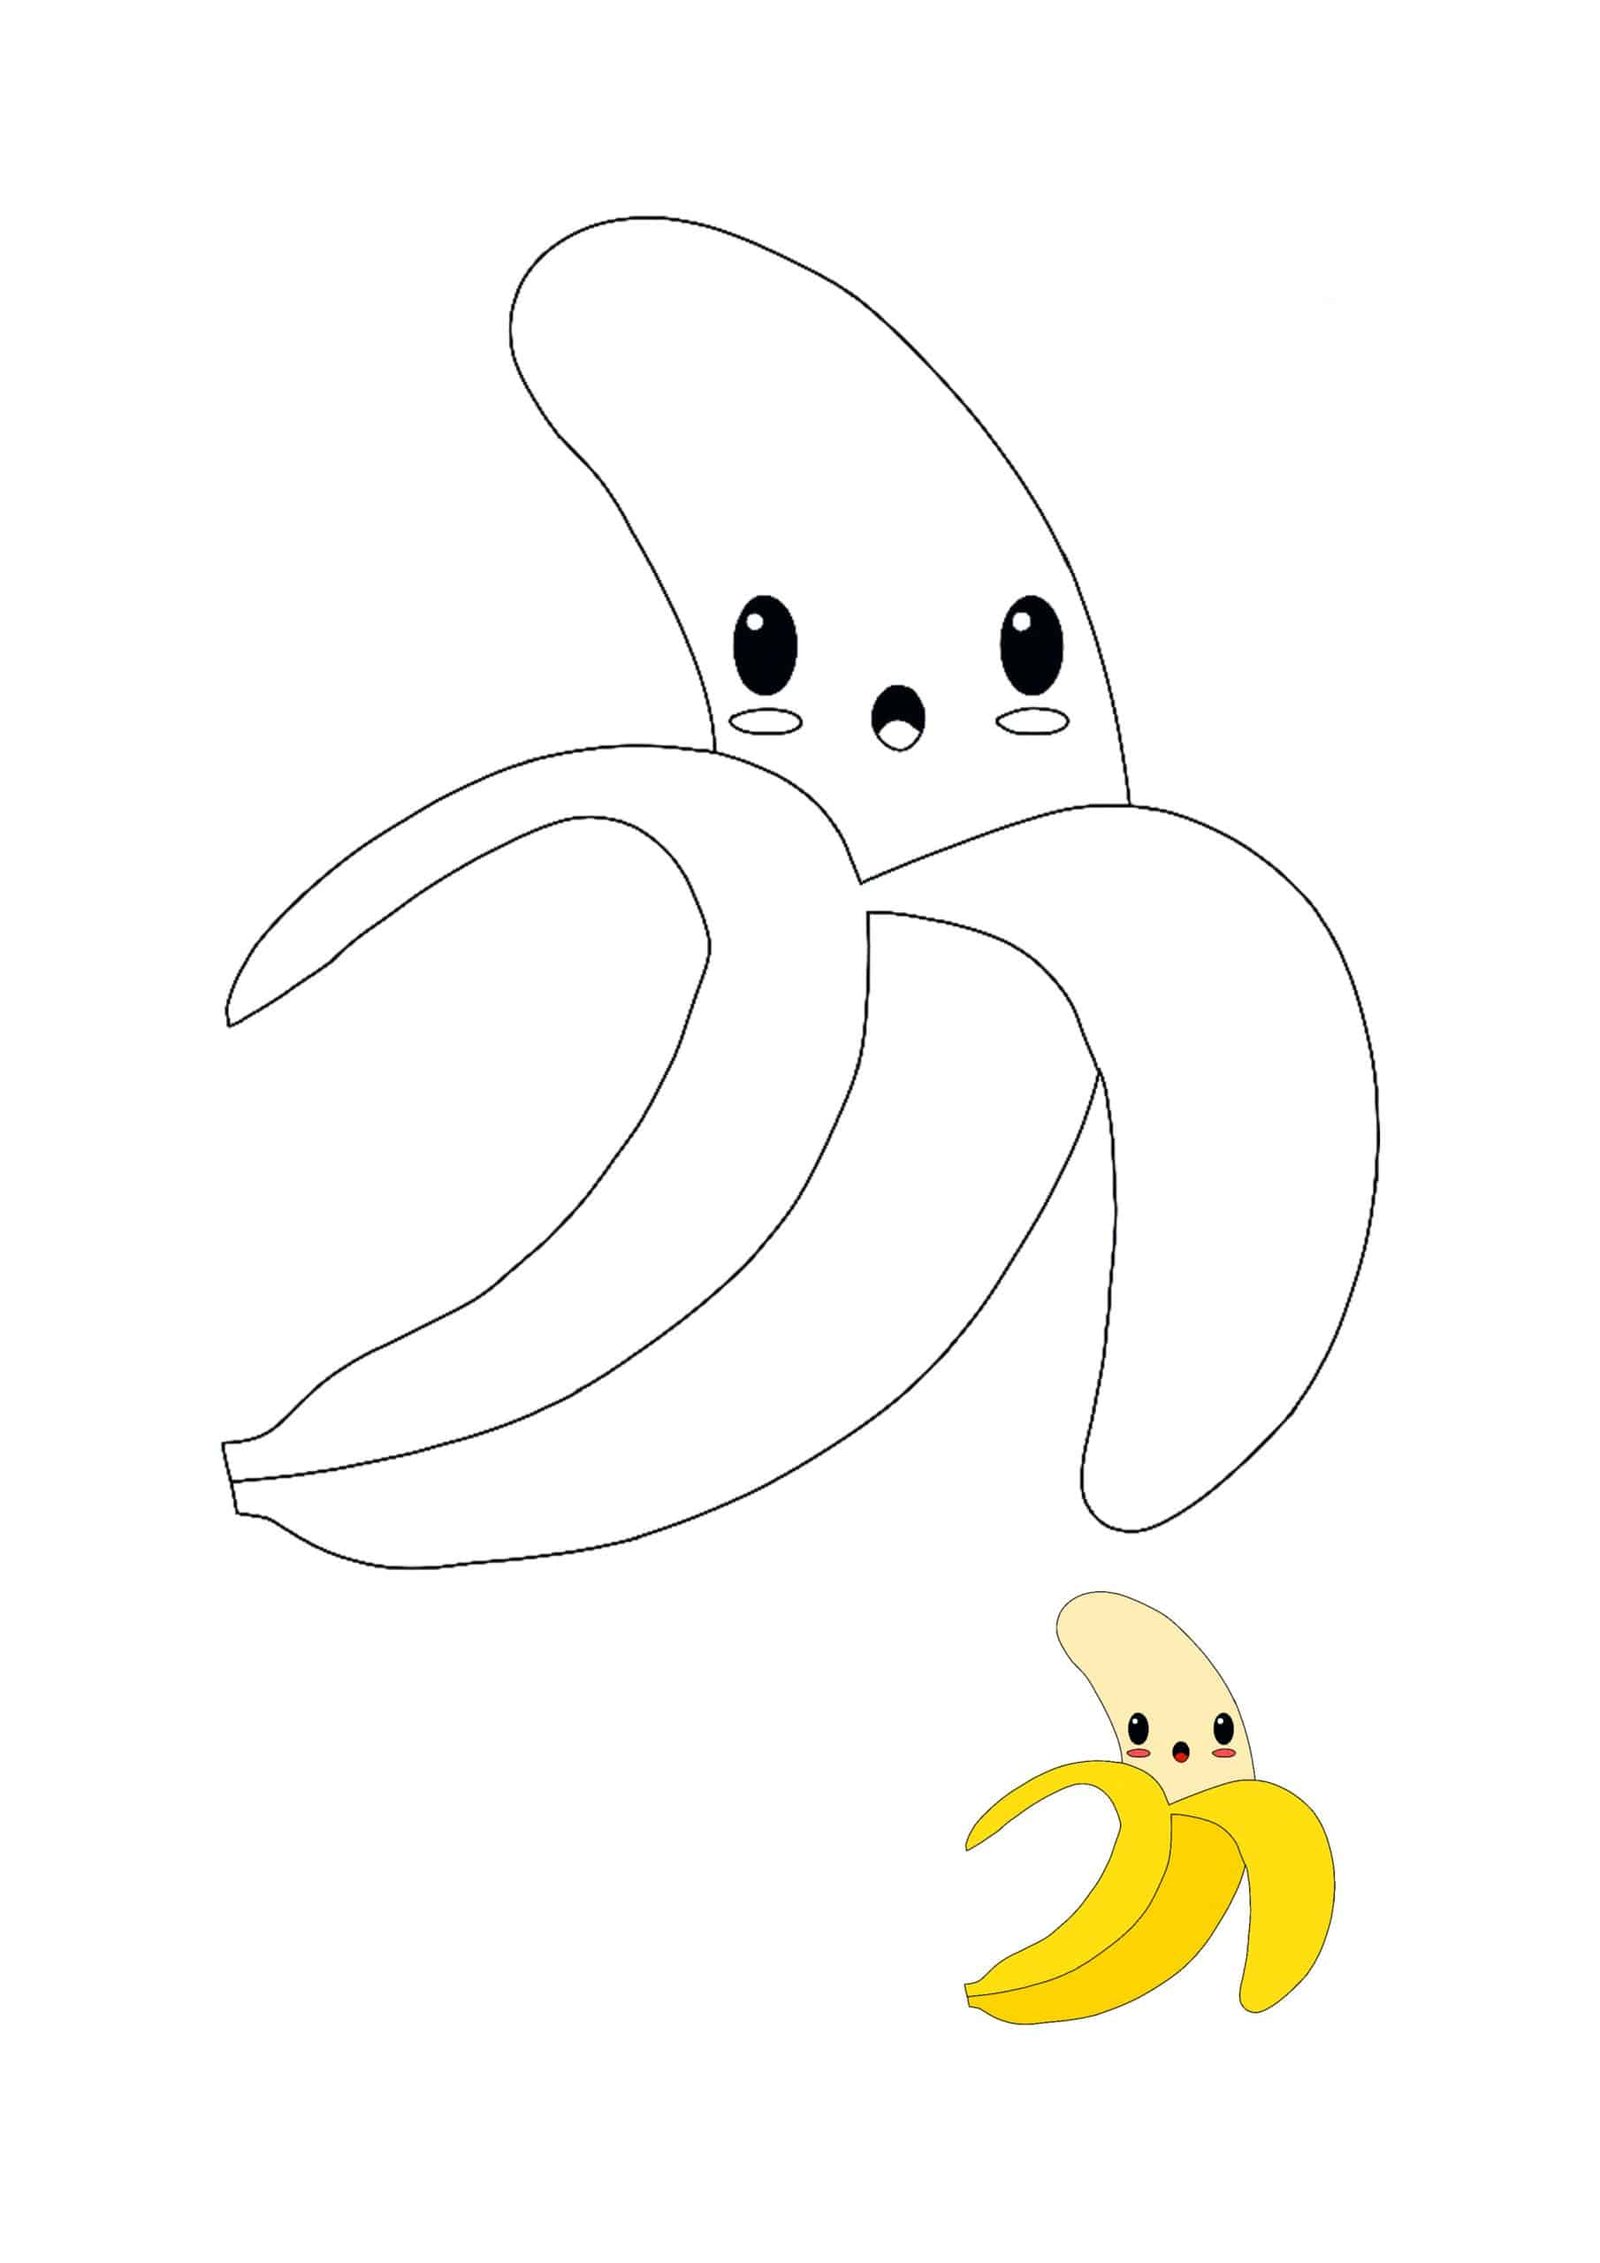 Kawaii Banana coloring sheet